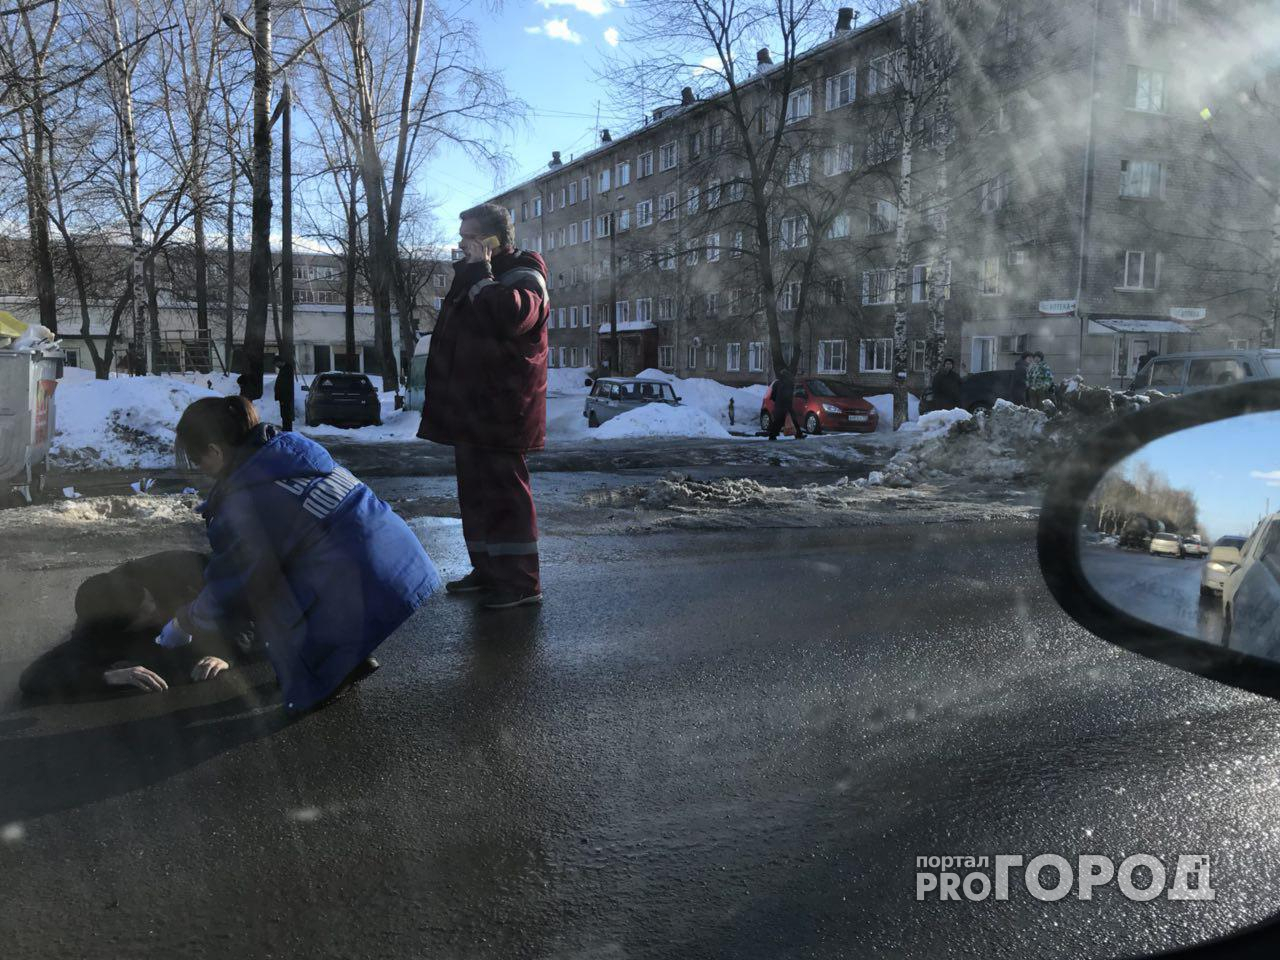 Очевидец: "В Кирове посреди дороги лежал мужчина без сознания"